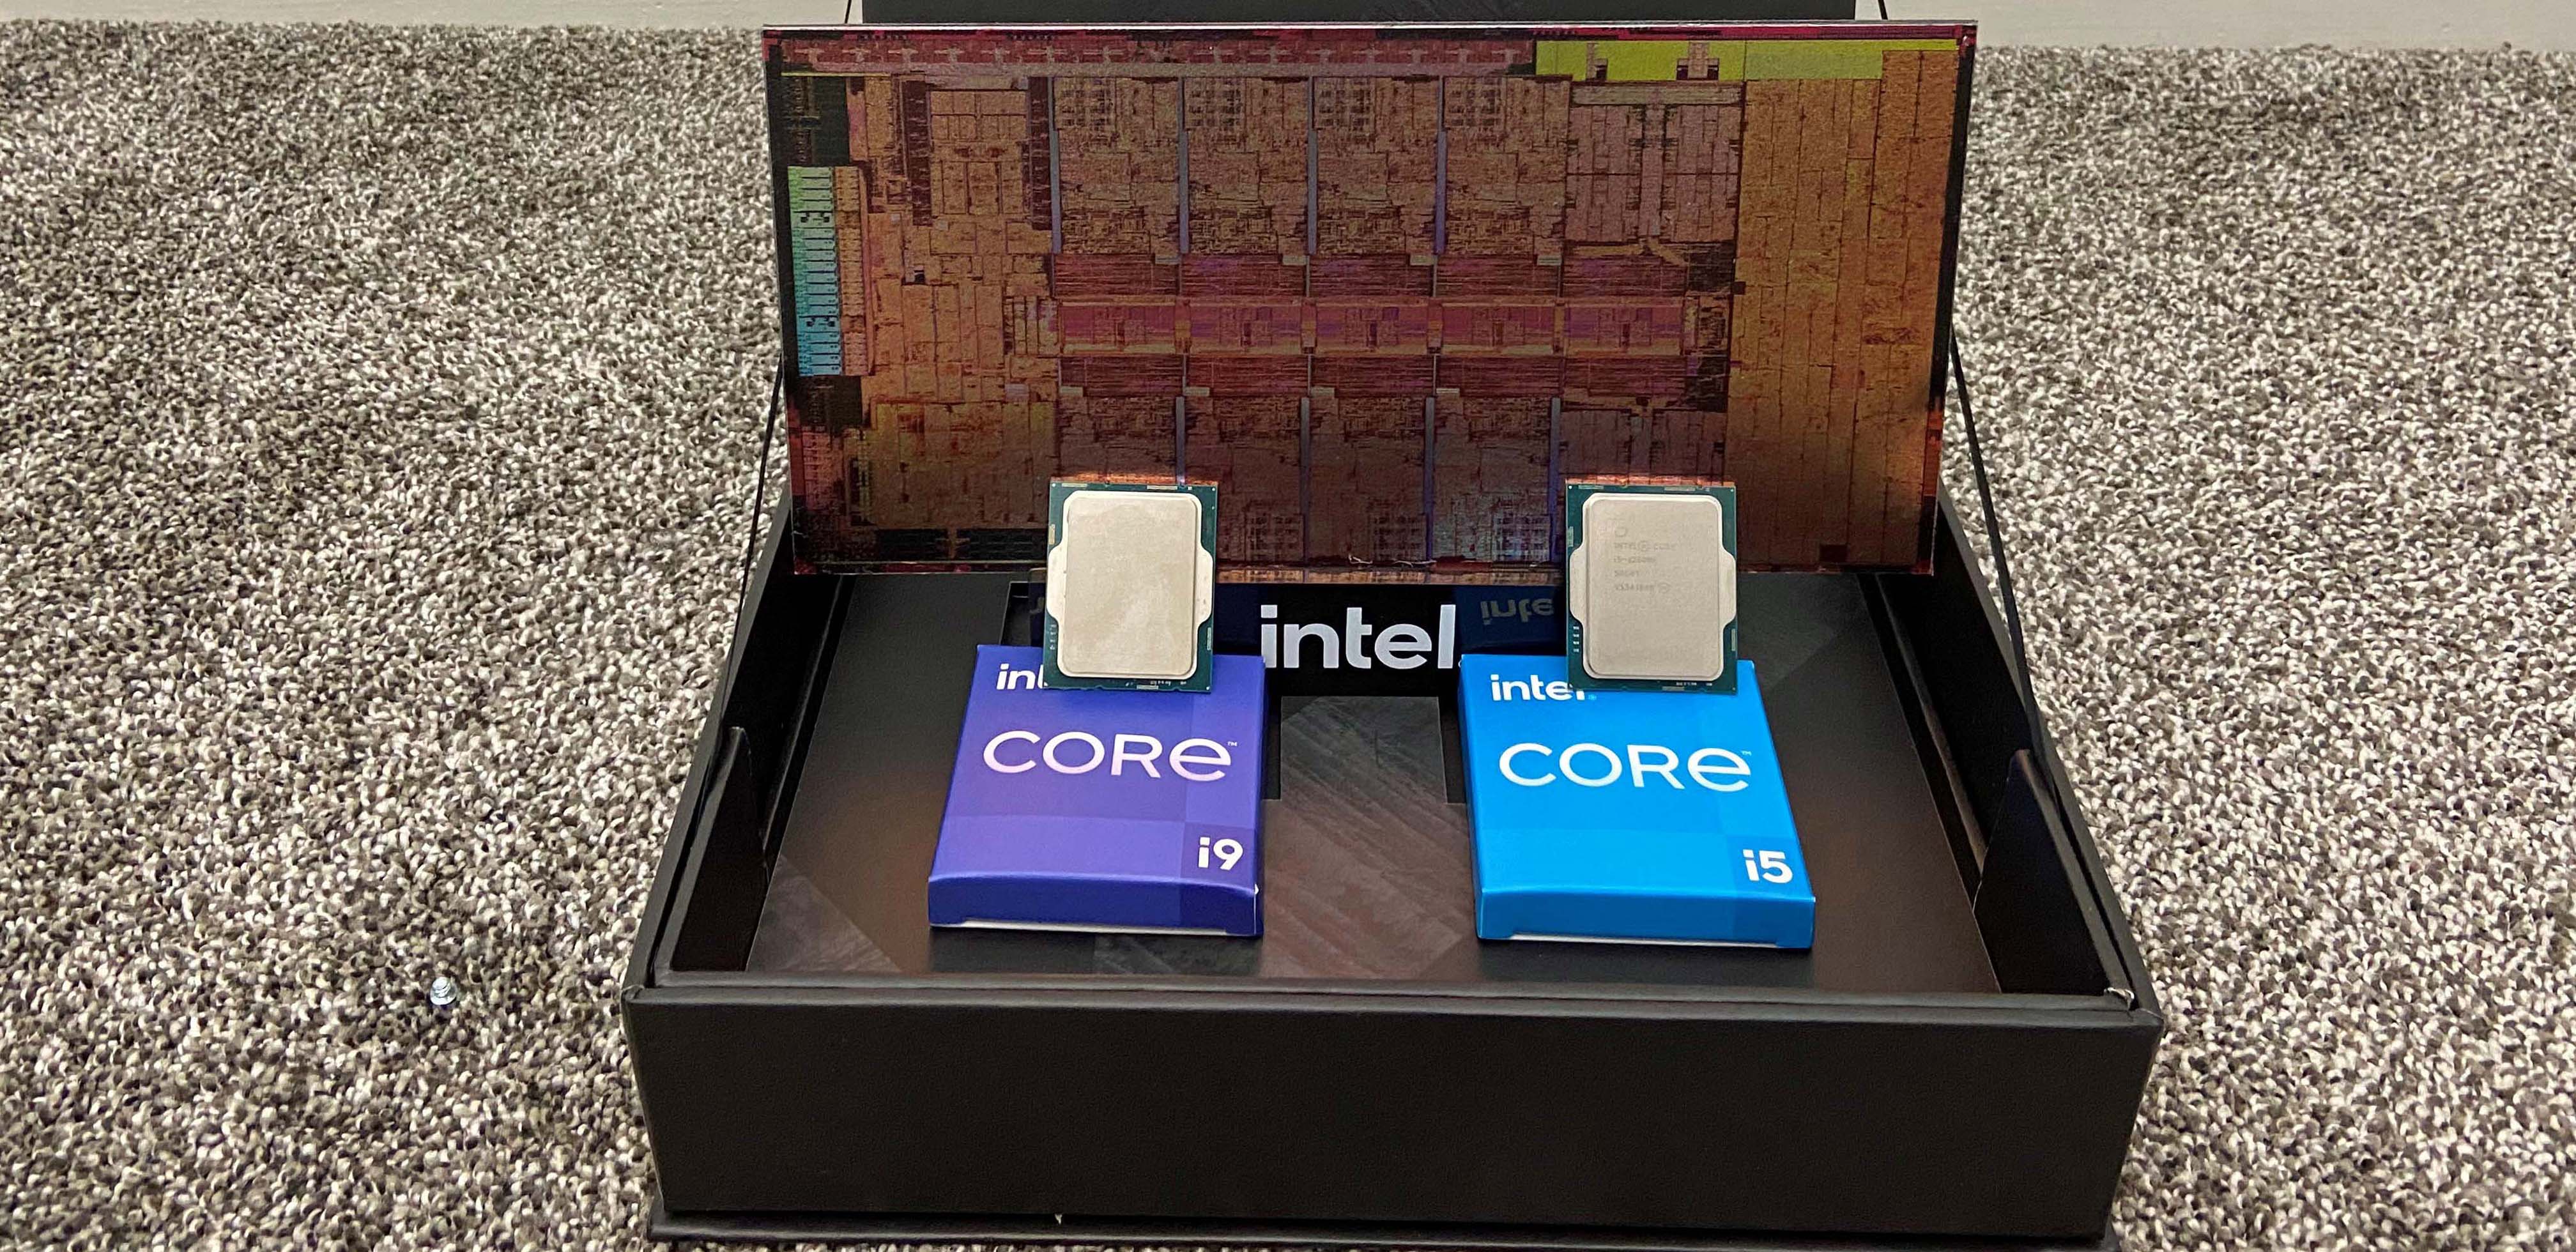 Intel's Alder Lake-S CPU pictured, Designed for Intel's Future